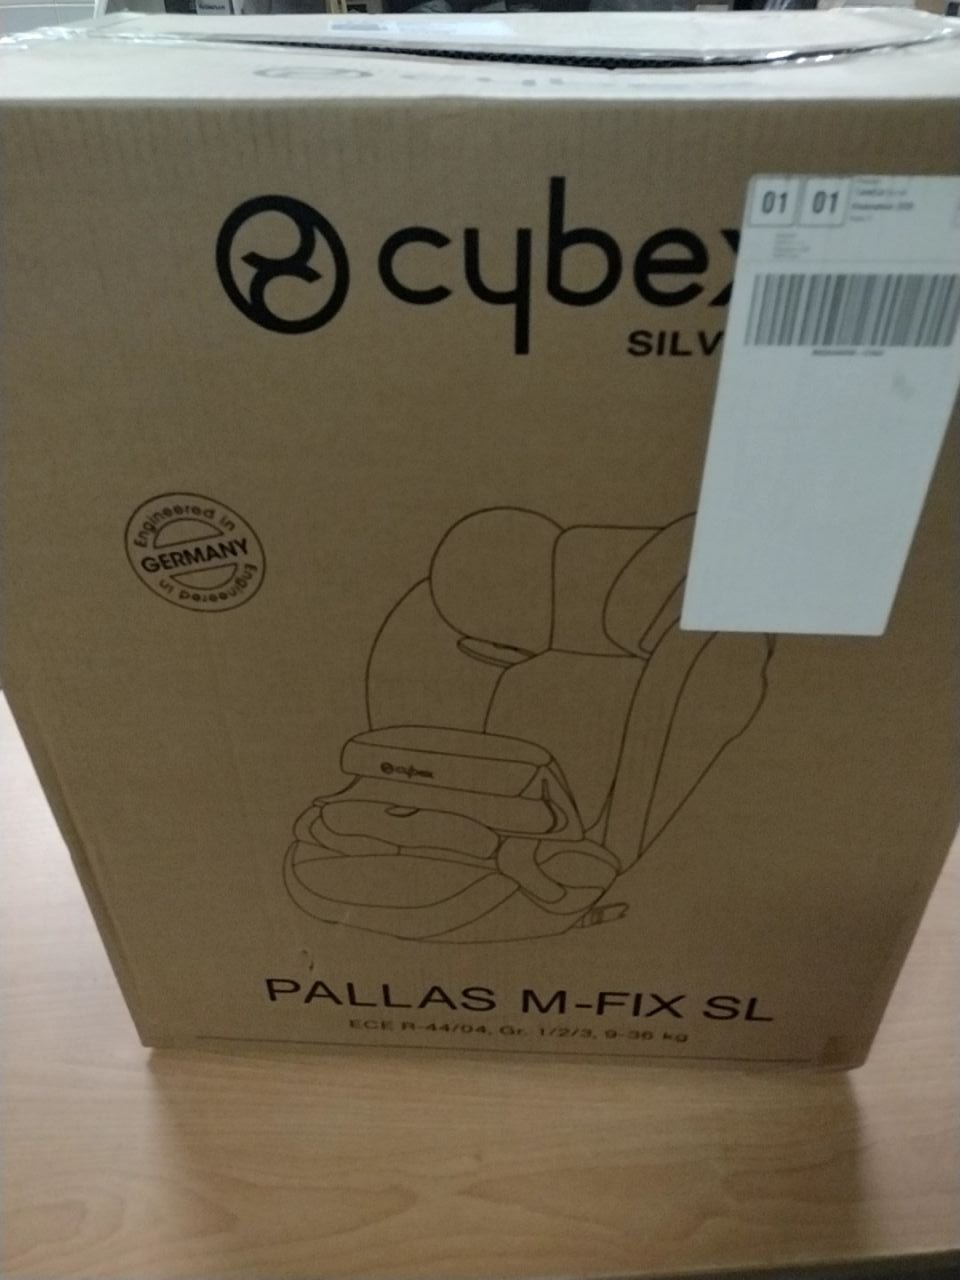 Autosedačka Cybex Pallas M-Fix SL pro děti od 9 měsíců do 12 let, 9-36 kg https://cybex-online.com/cs-cz/car-seats/pallasmfixsl